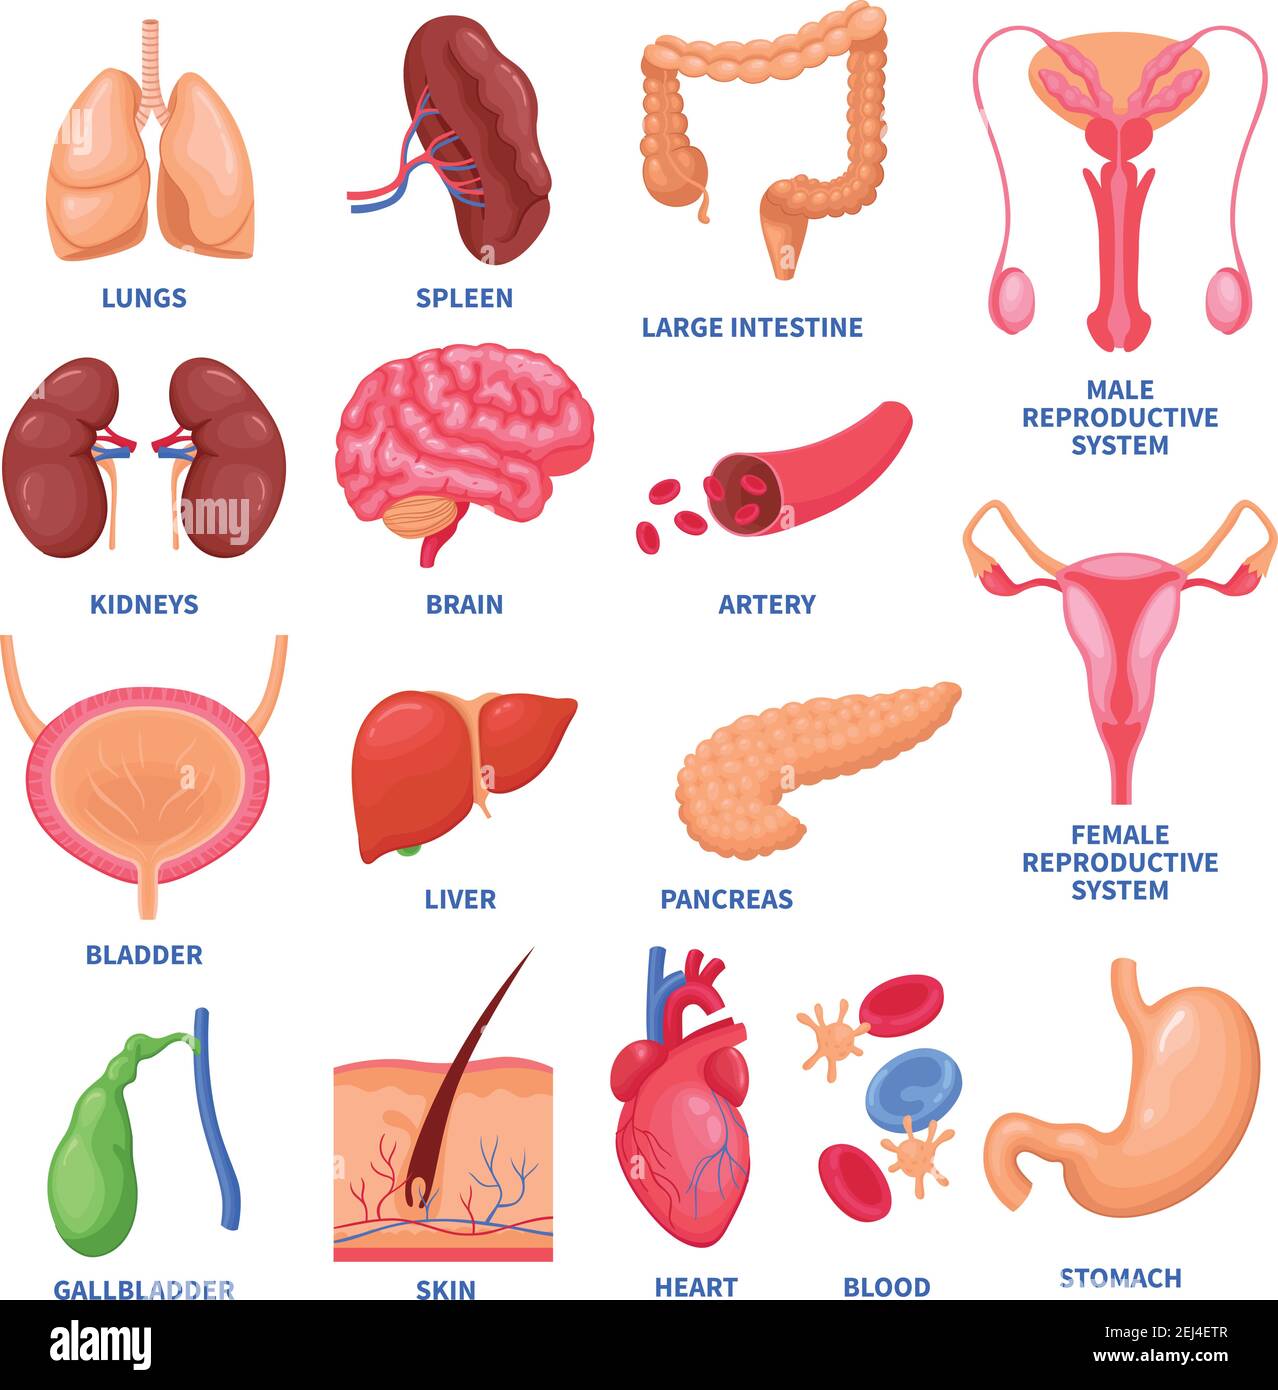 órganos Internos Femeninos Imágenes Recortadas De Stock Alamy